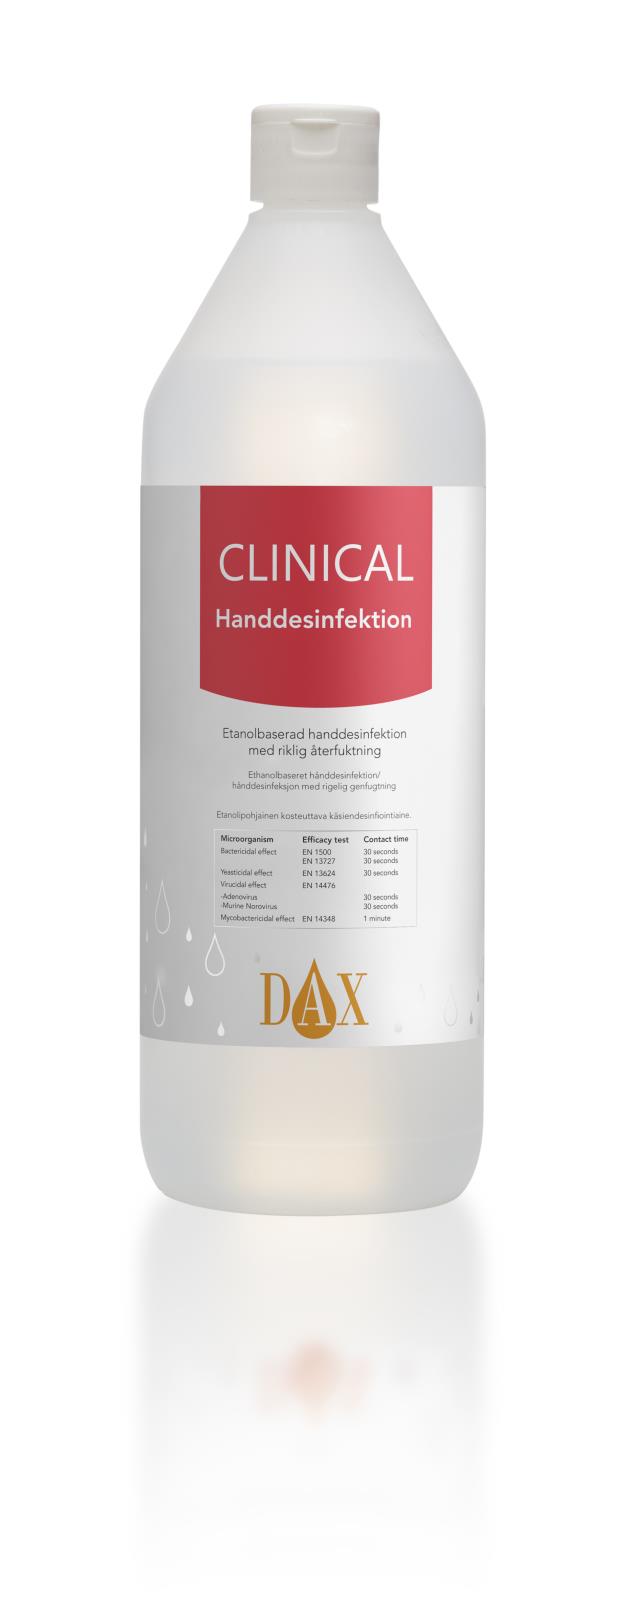 Handdesinfektion DAX Clinical 75 1L 51010125